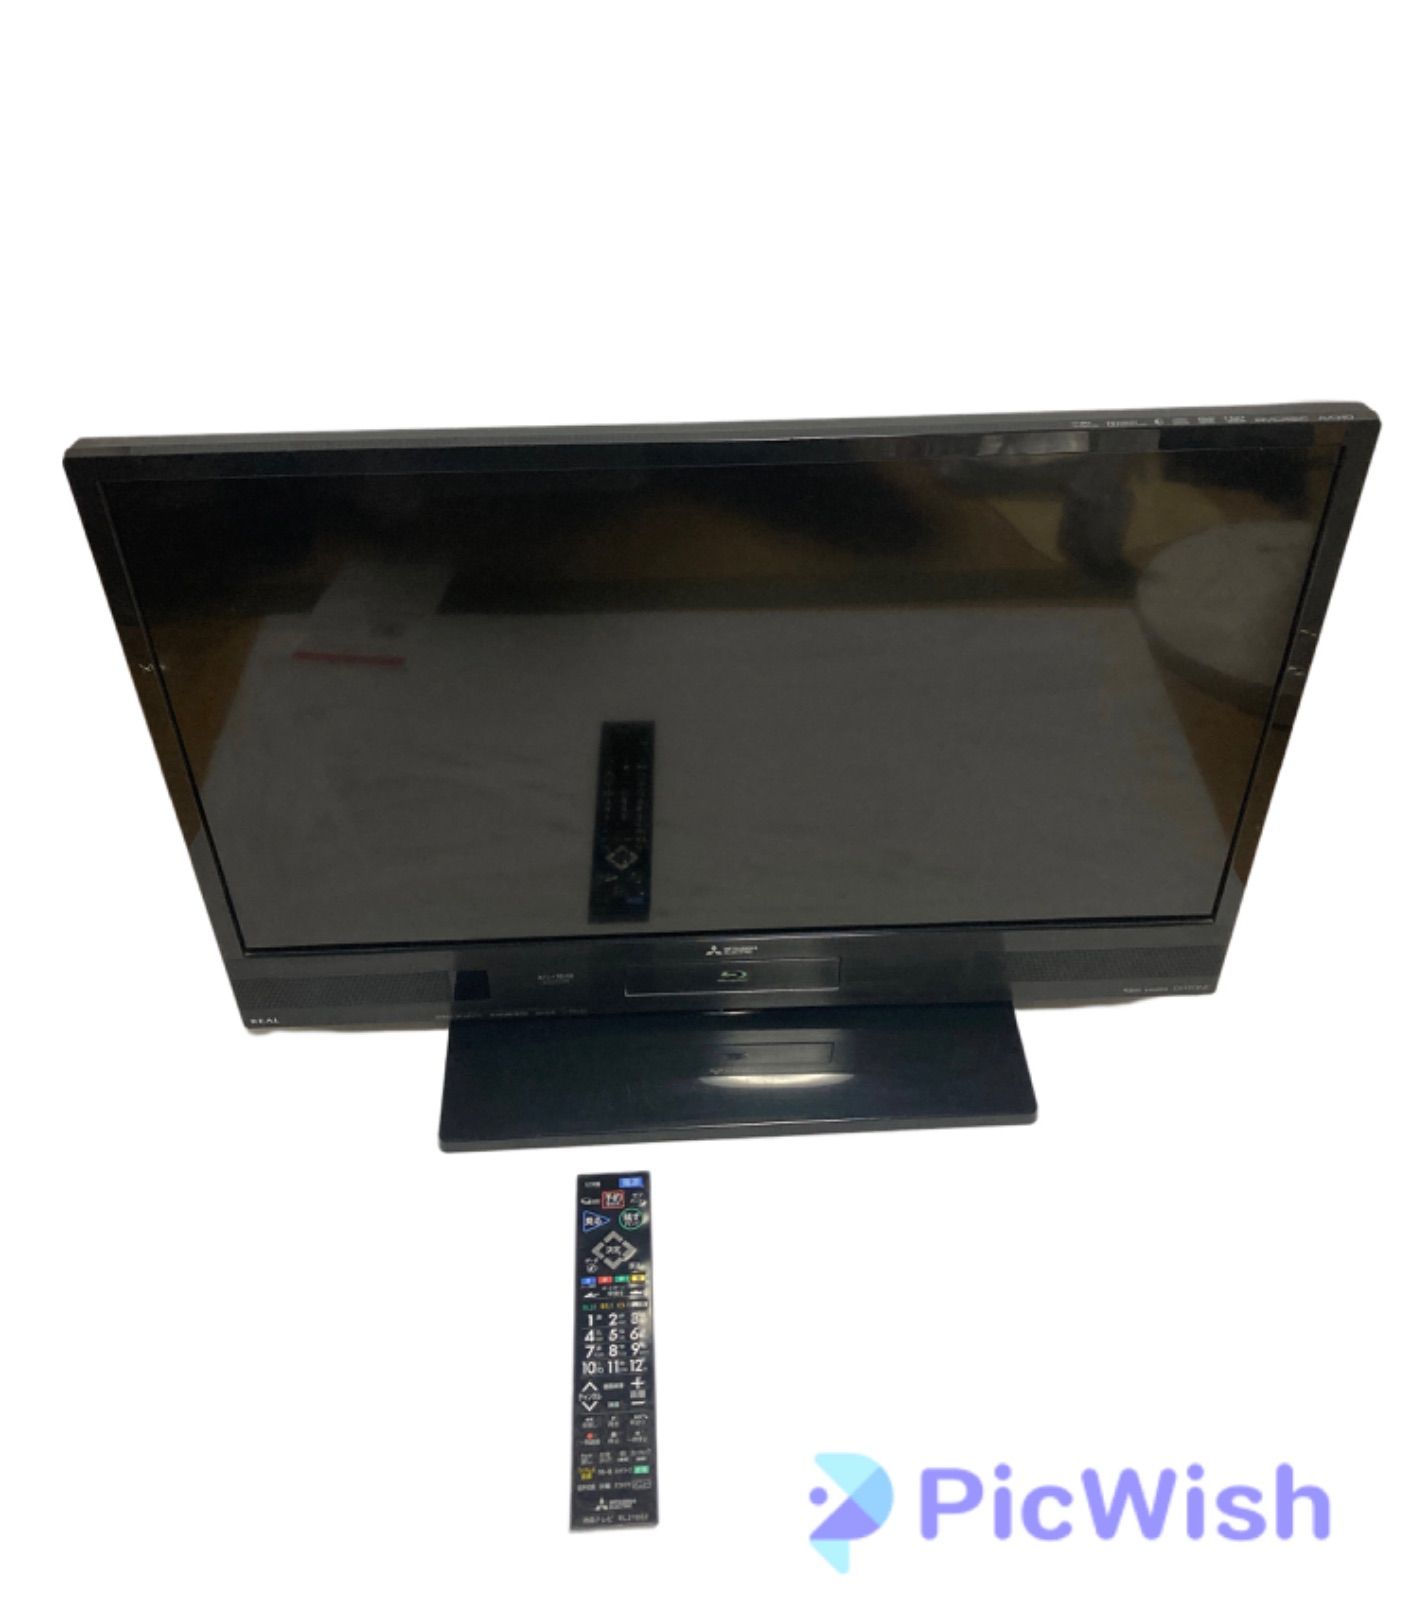 三菱電機 32V型 ブルーレイHDD内蔵 液晶テレビ LCD-A32BHR7